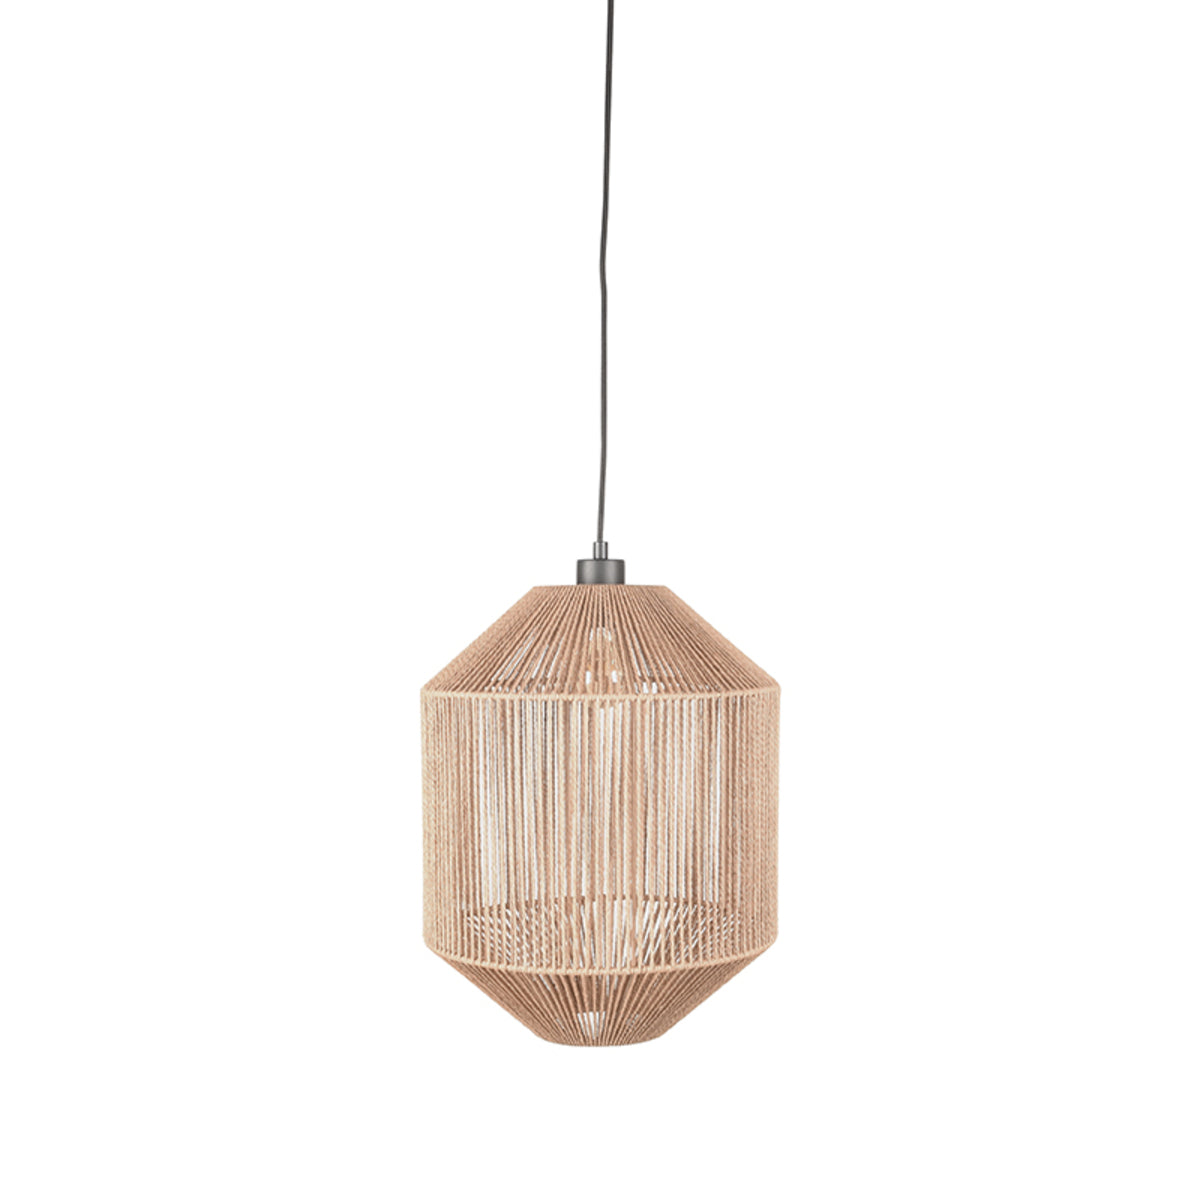 LABEL51 Hanging Lamp Ibiza - Natural - Jute - 1-Light Cylinder